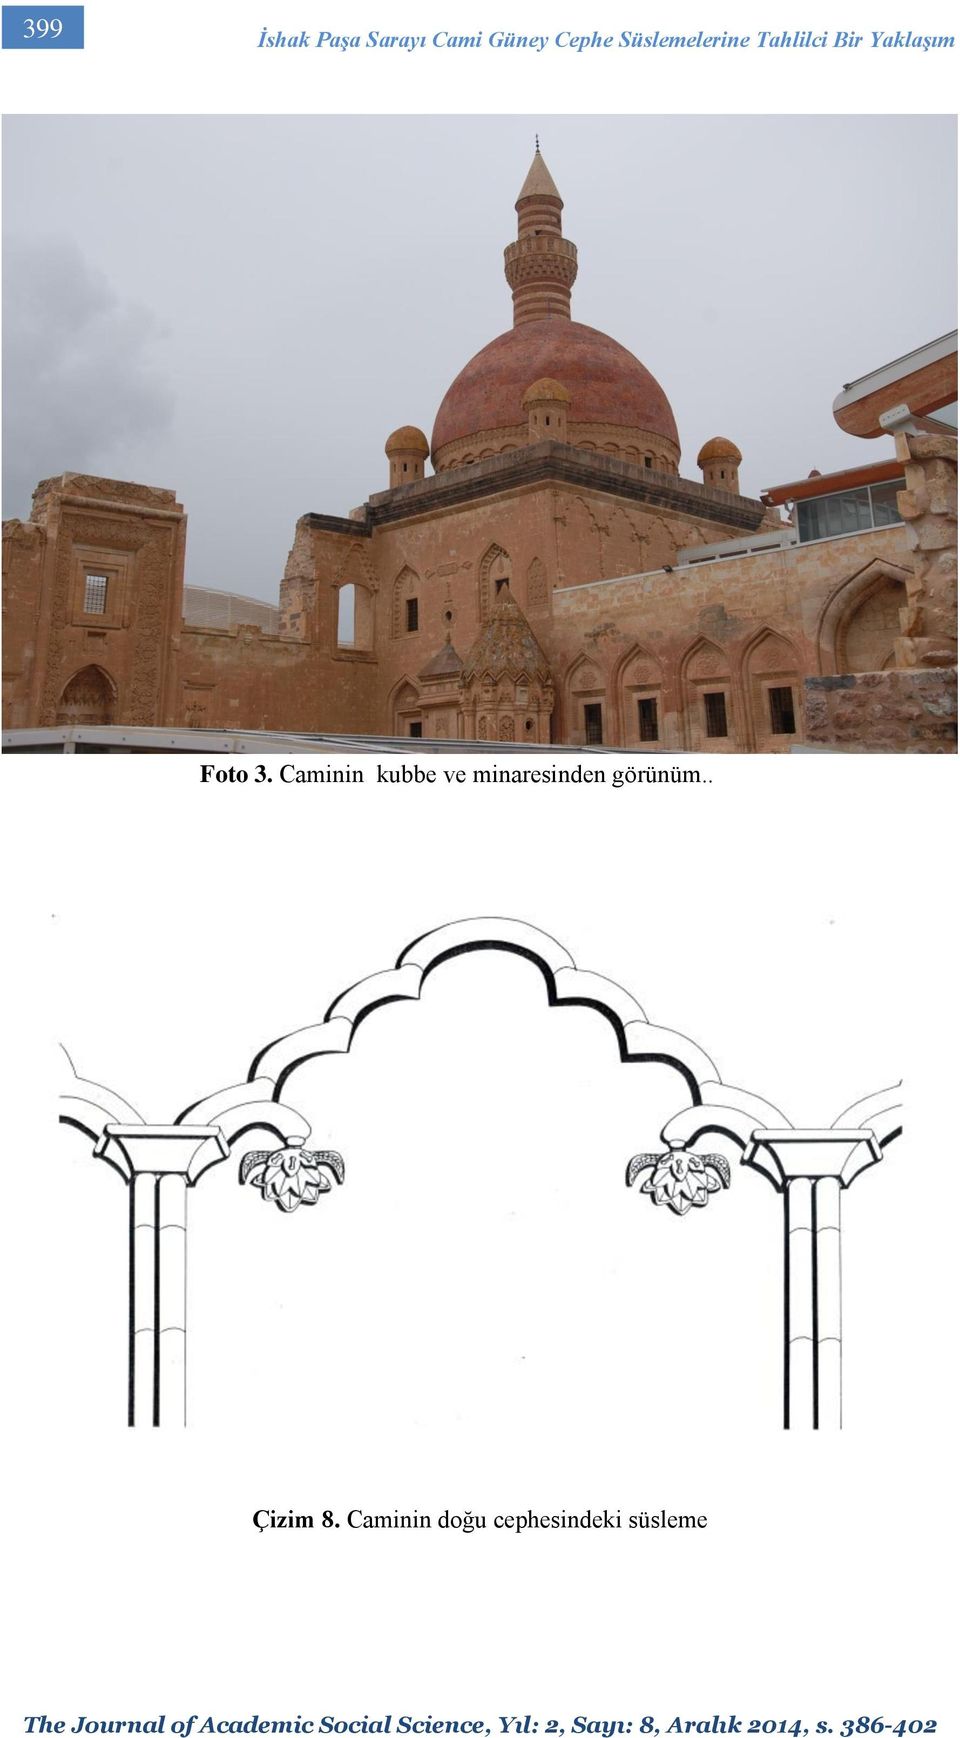 3. Caminin kubbe ve minaresinden görünüm.